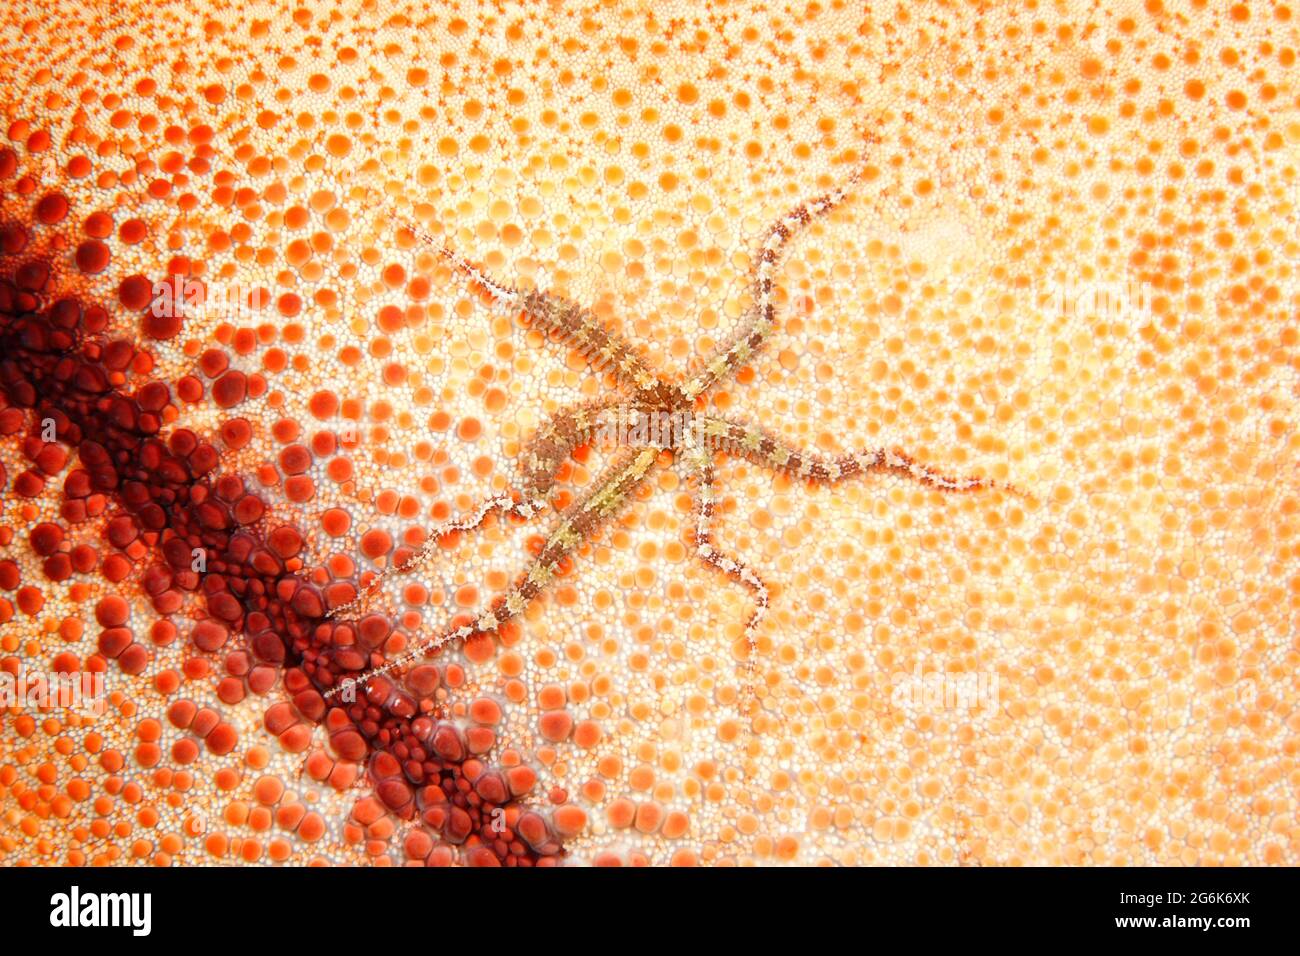 Estrella quebradiza, Ophiactis sp. Se encuentra en la parte inferior de una estrella de mar. Tulamben, Bali, Indonesia. Mar de Bali, Océano Índico Foto de stock